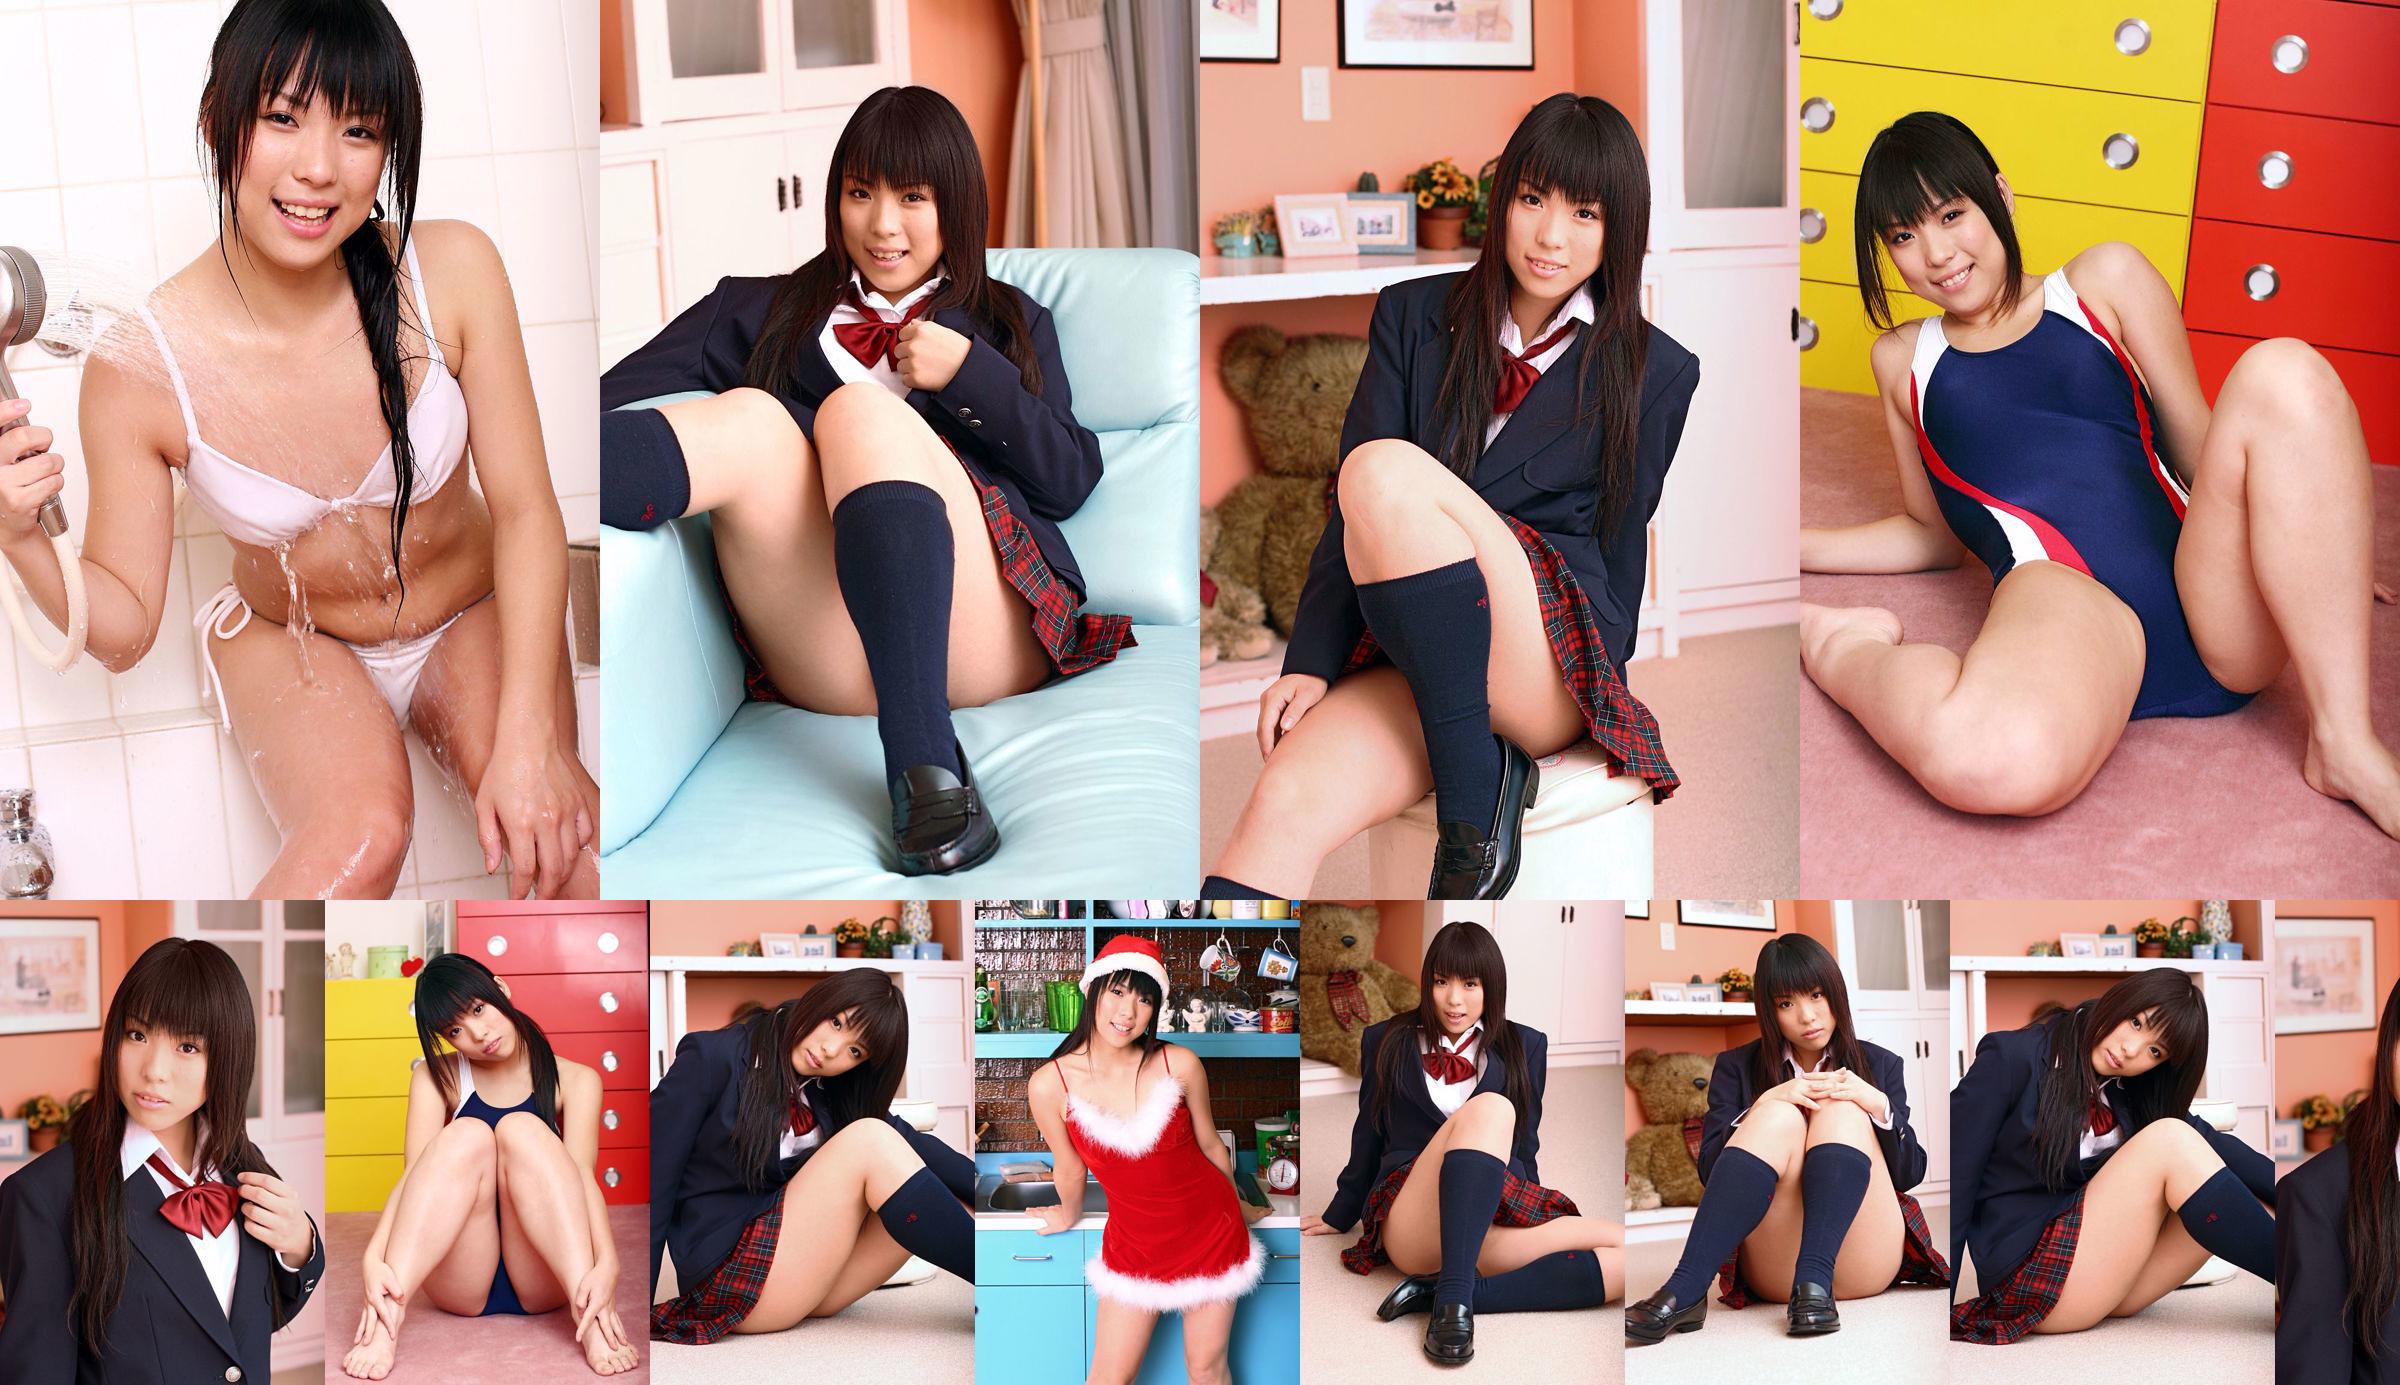 [DGC] Nr. 375 Chiharu Shirakawa Uniform schönes Mädchen Himmel No.e79dcb Seite 1